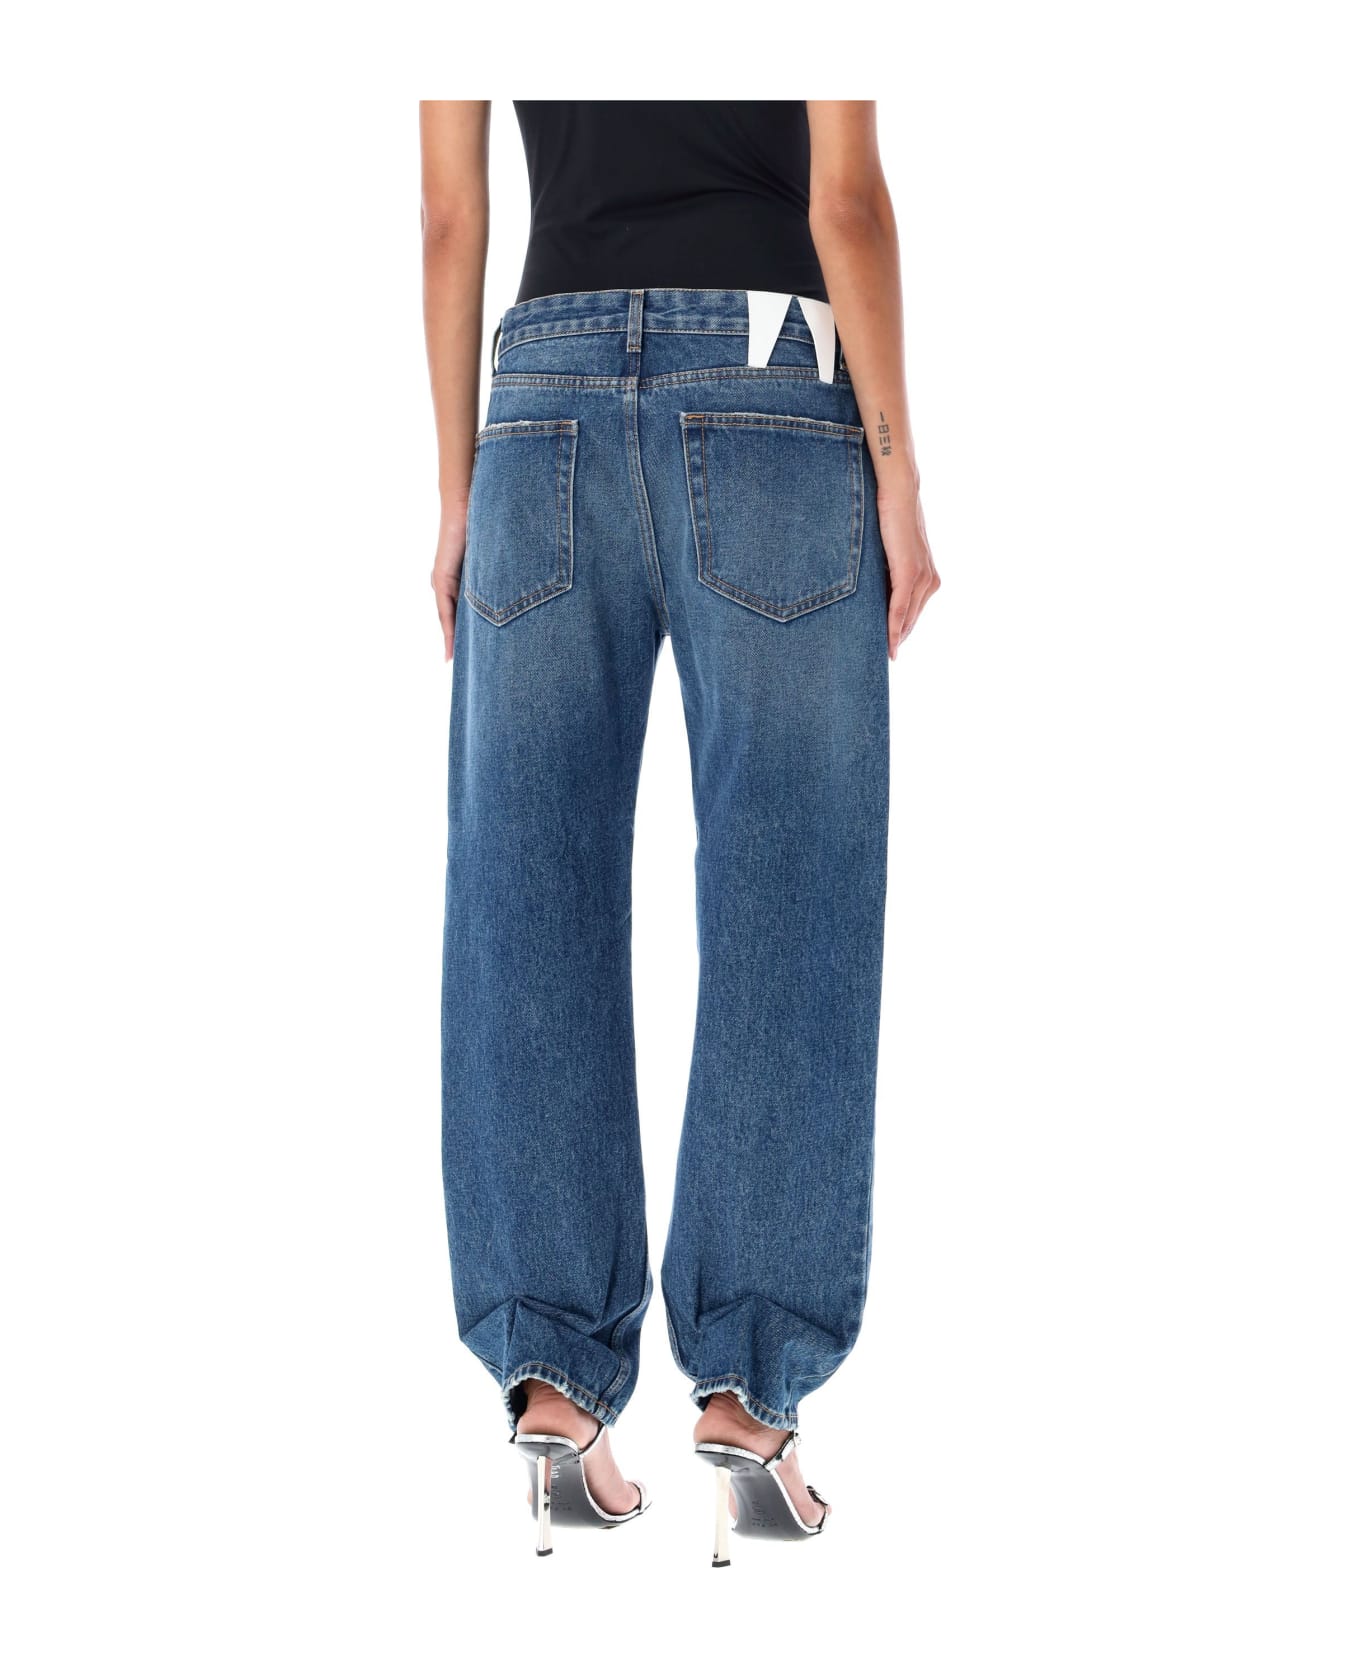 DARKPARK Liz Cropped Denim Jeans - MEDIUM WASH